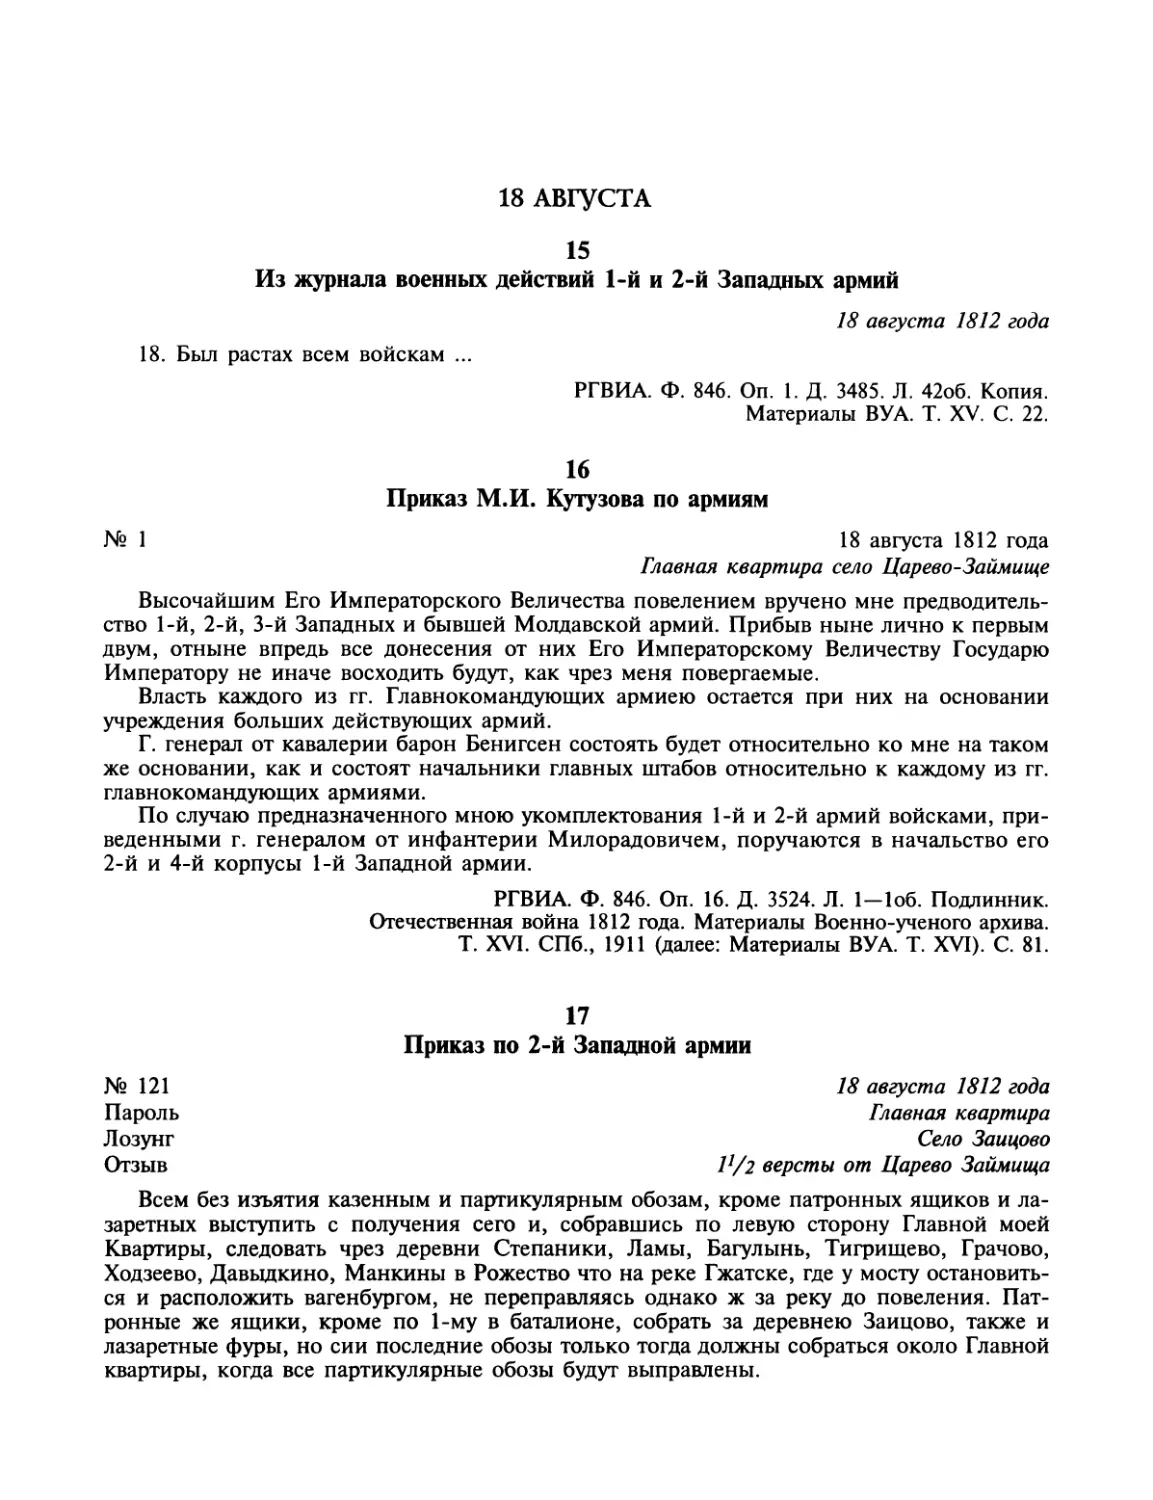 18 августа
Приказ М.И.Кутузова по армиям
Приказ по 2-й Западной армии